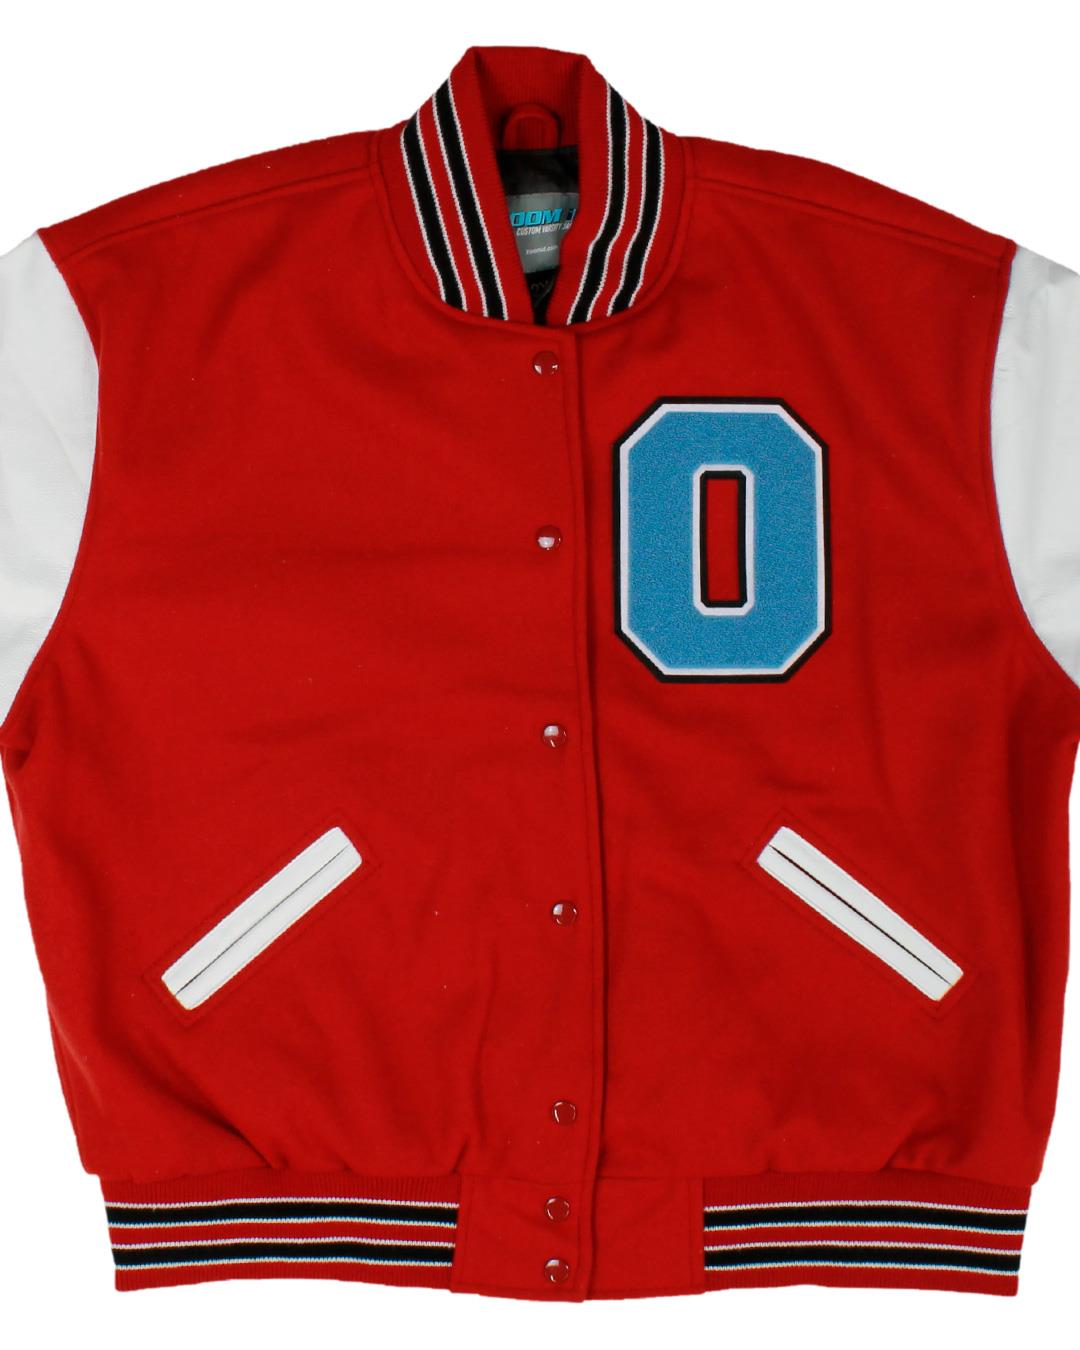 Owyhee High School Varsity Jacket, Owyhee, NV - Front